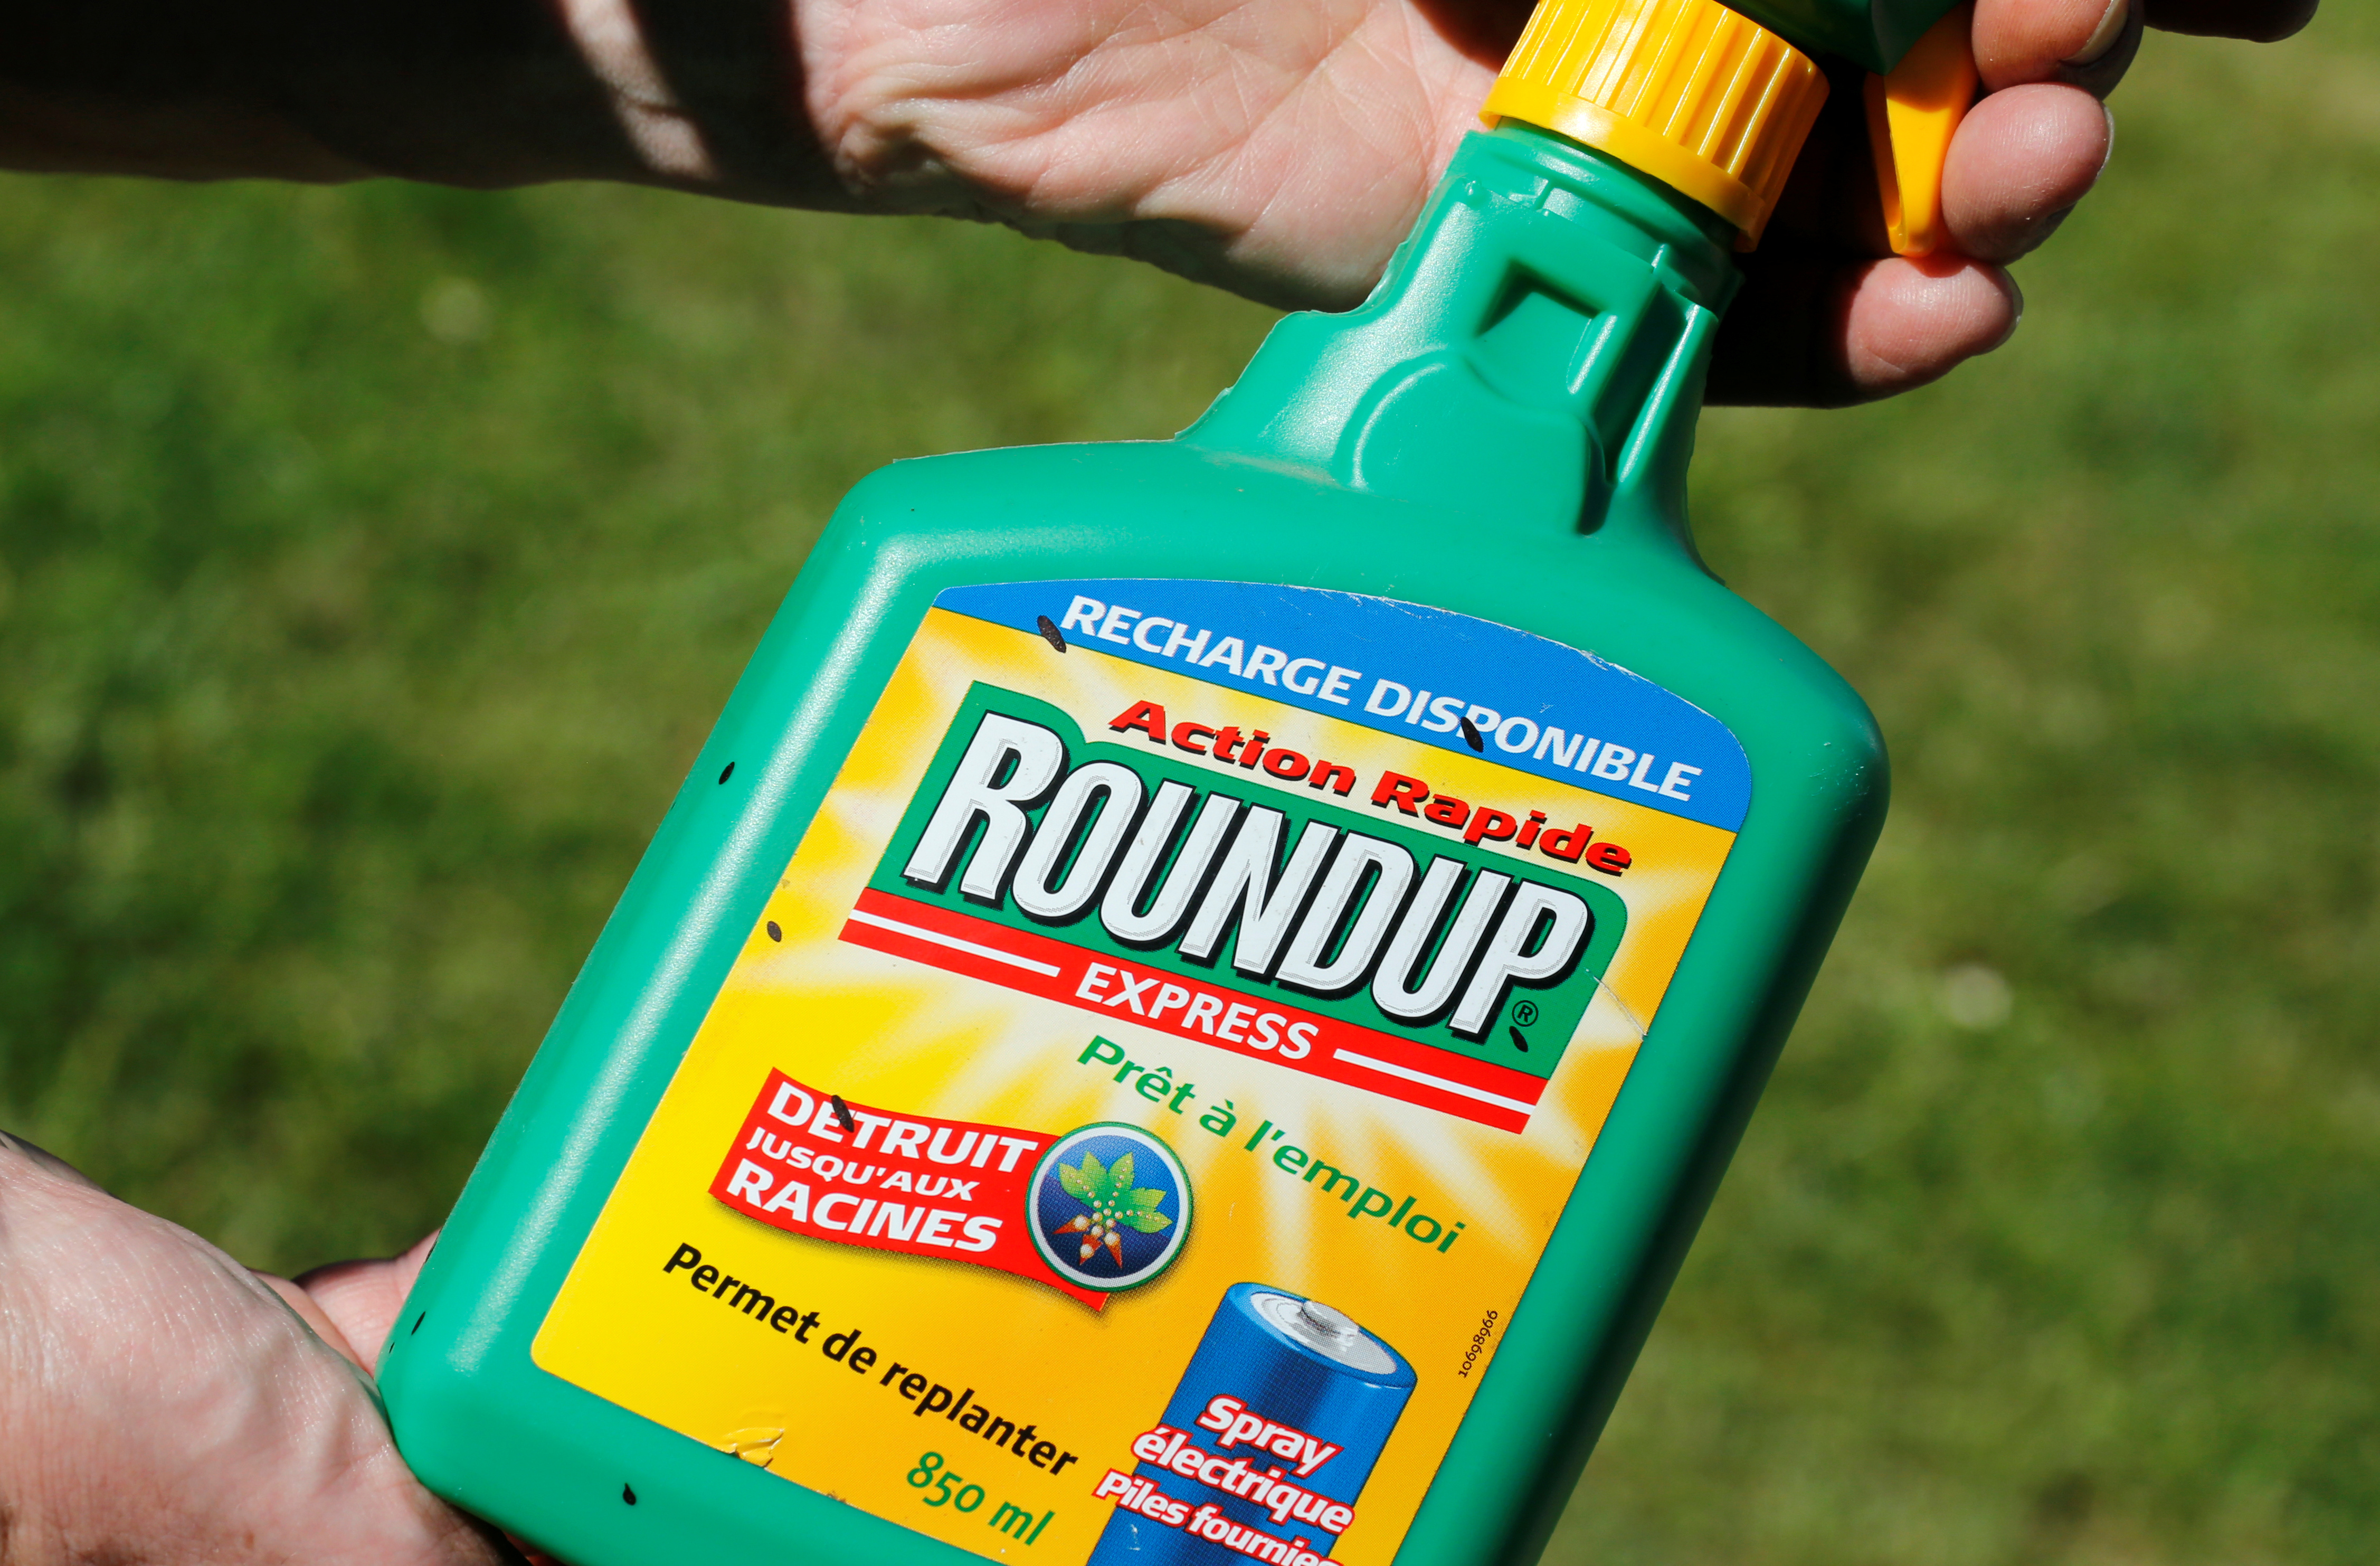 Roundup: 10 milliards de dollars pour solder les litiges mais pas de reconnaissance de faute de Bayer